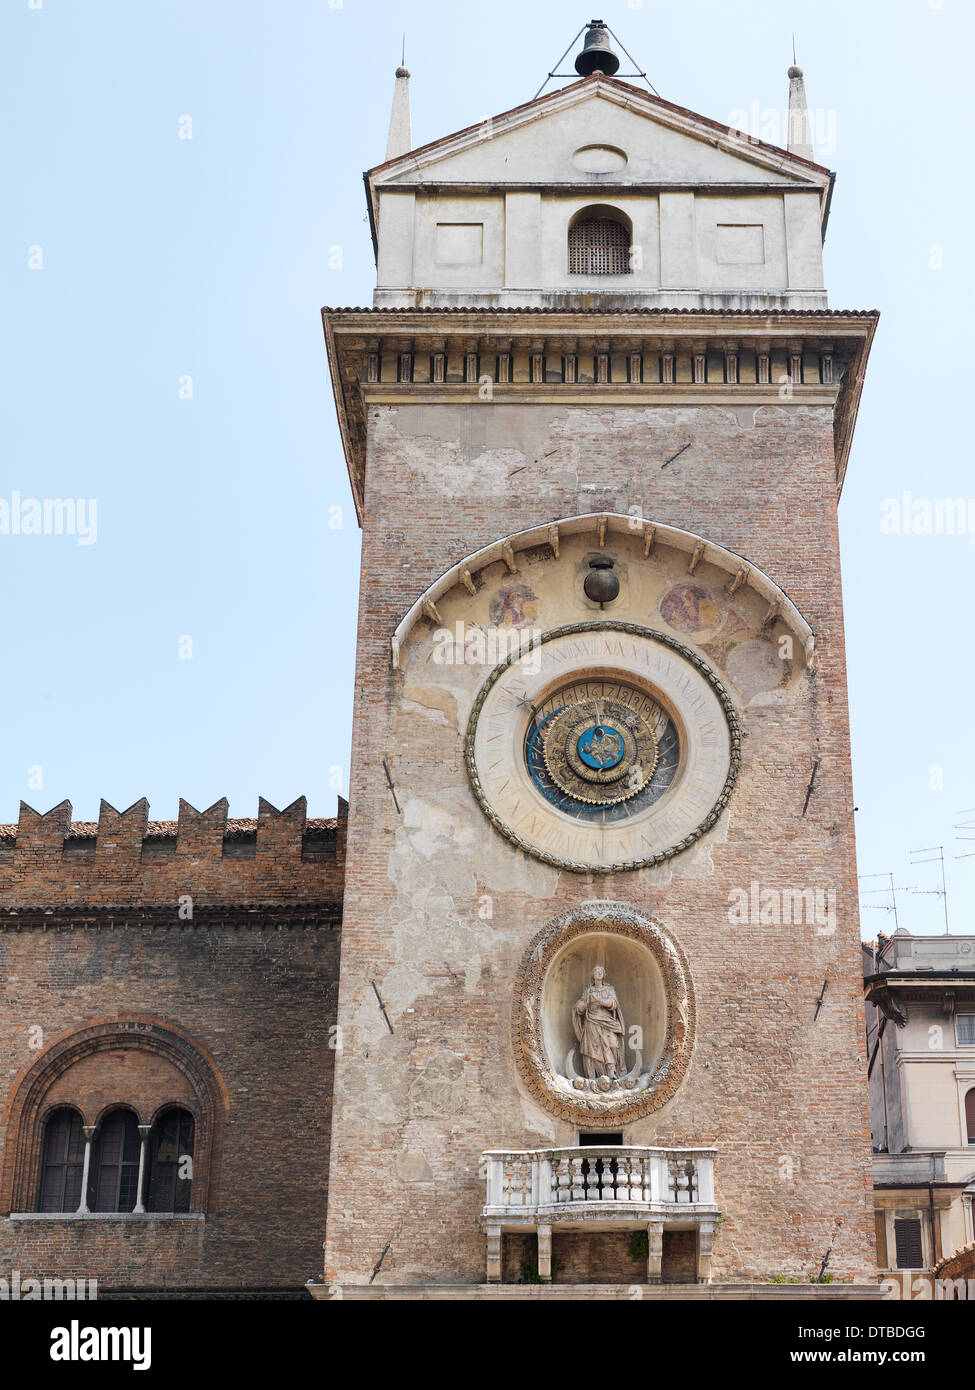 Mantua, Italien, der Clock Tower (Clocktower) an der Piazza Delle Erbe Stockfoto